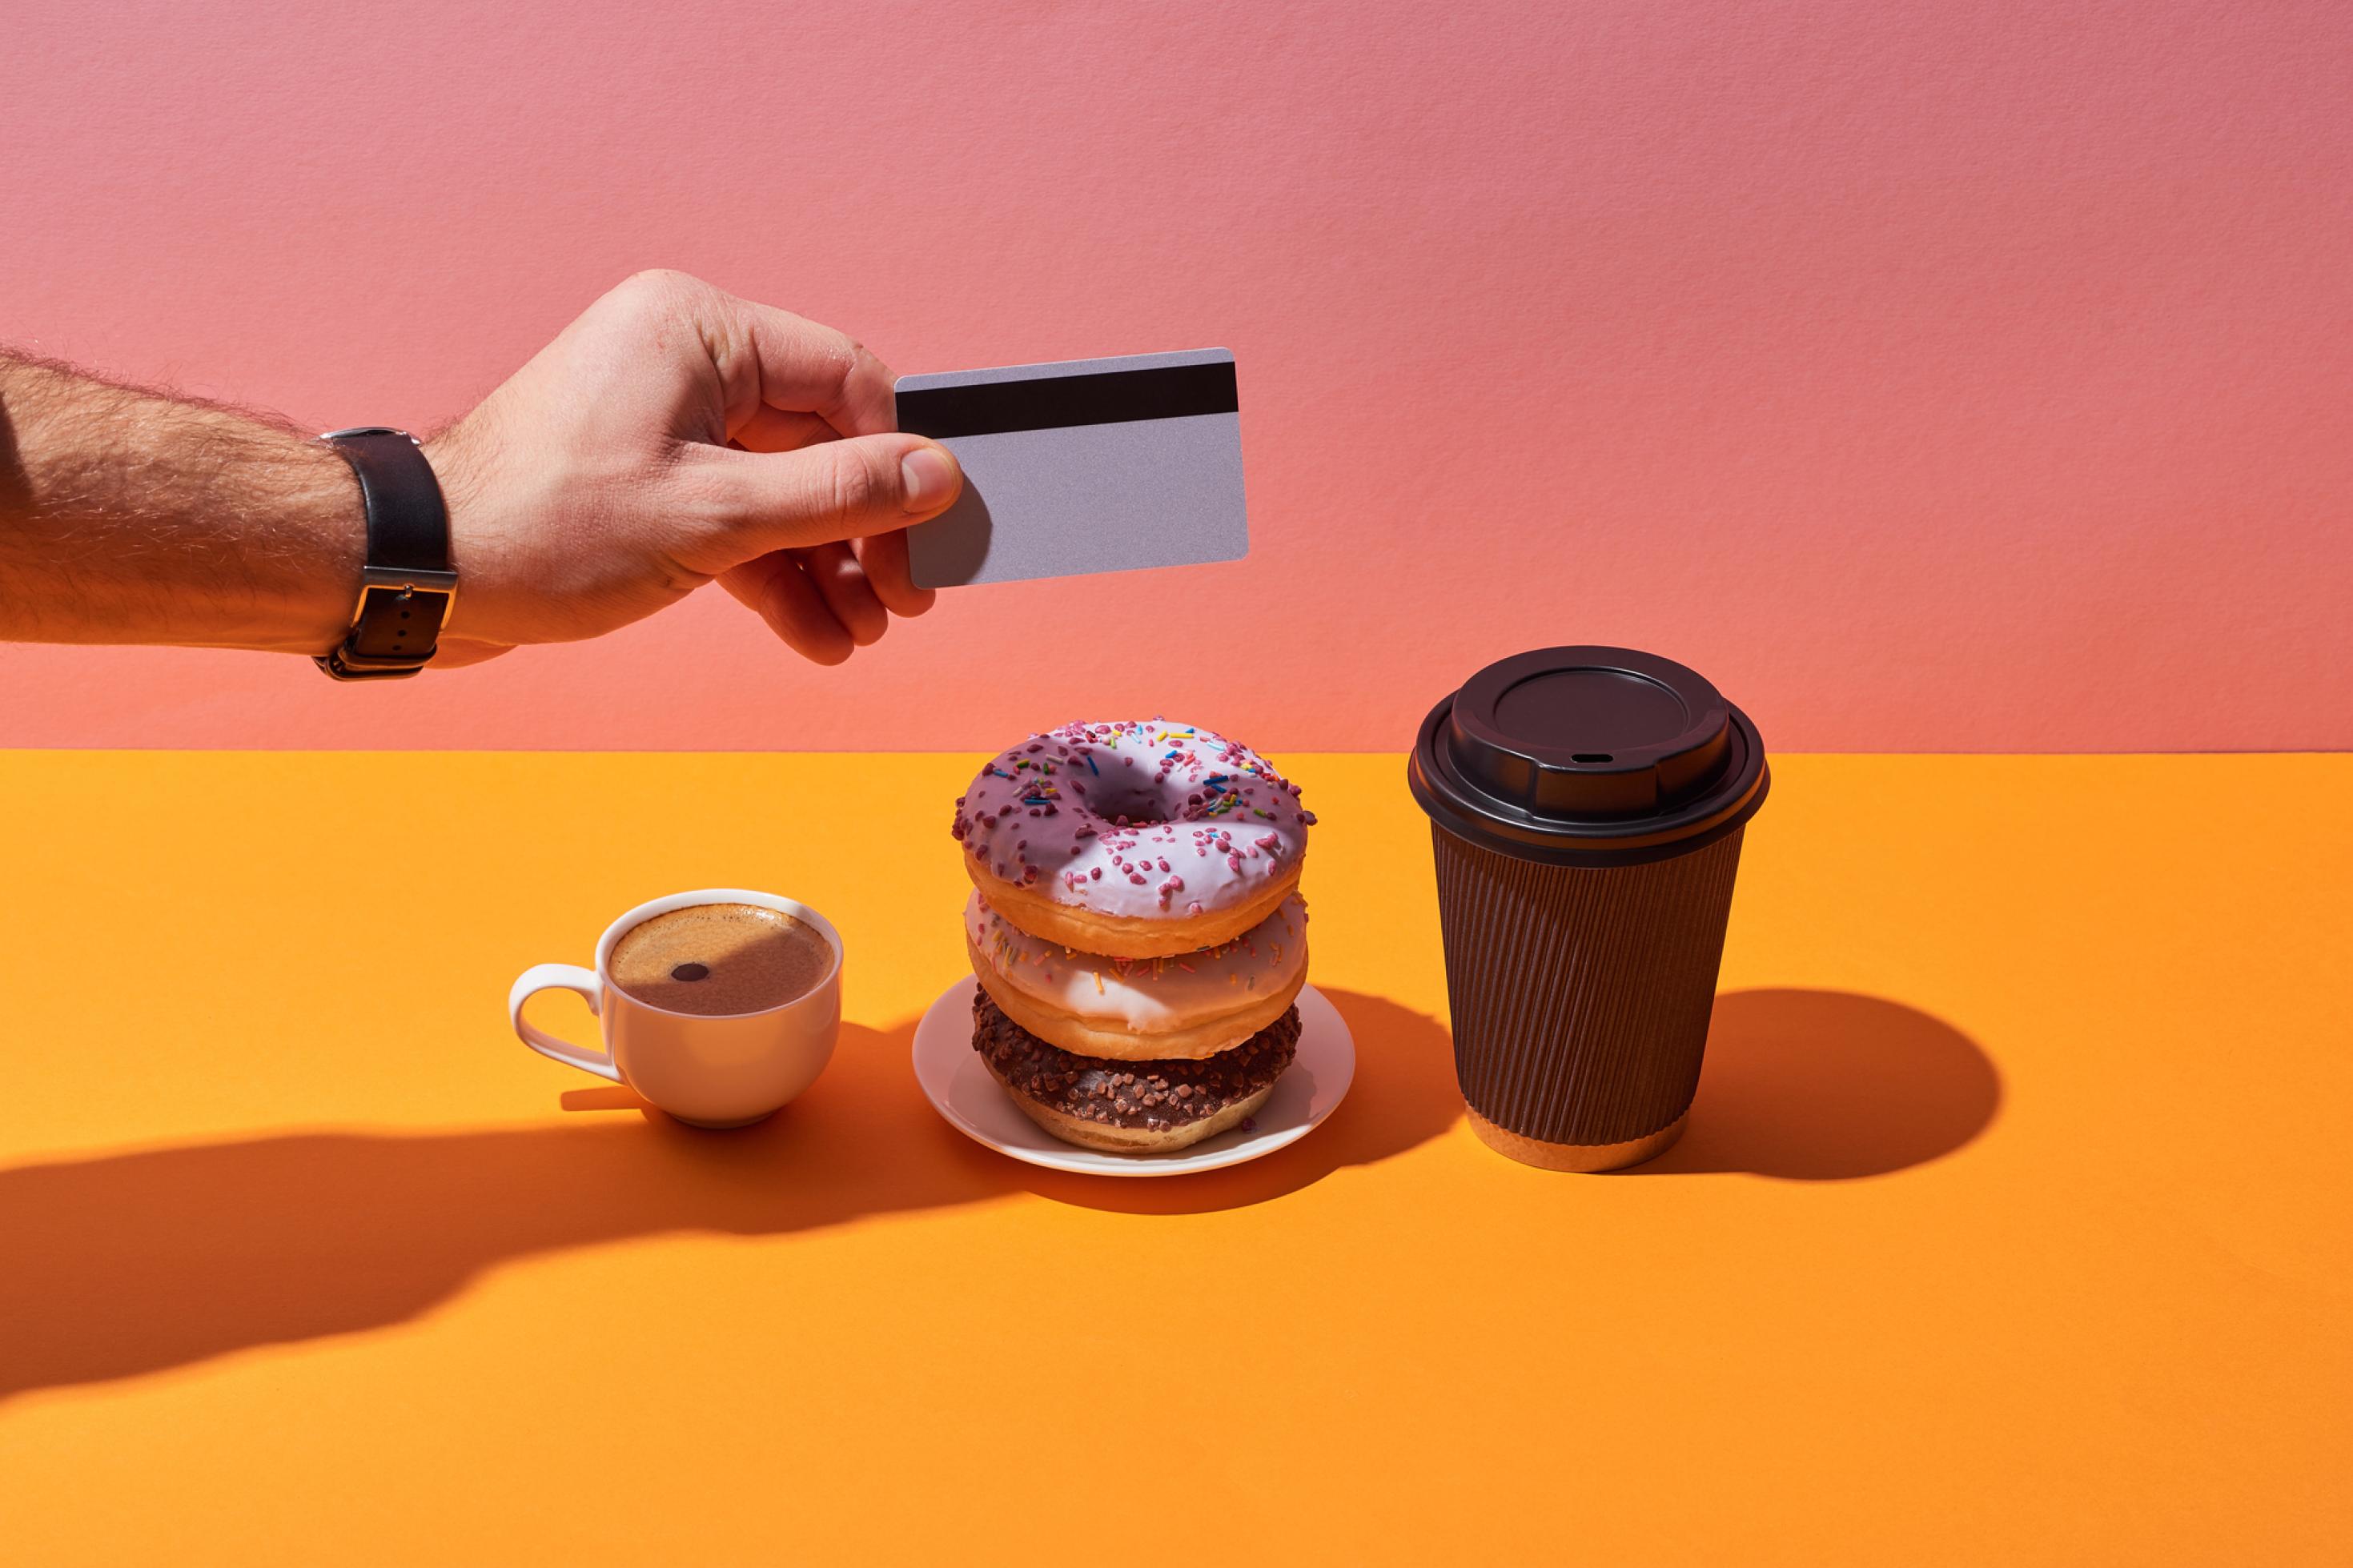 Ein Espresso, drei übereinander gestapelte bunt verzierte Donuts und ein Coffe-to-go stehen nebeneinander. Eine Männerhand hält eine Kreditkarte zum Bezahlen hin.